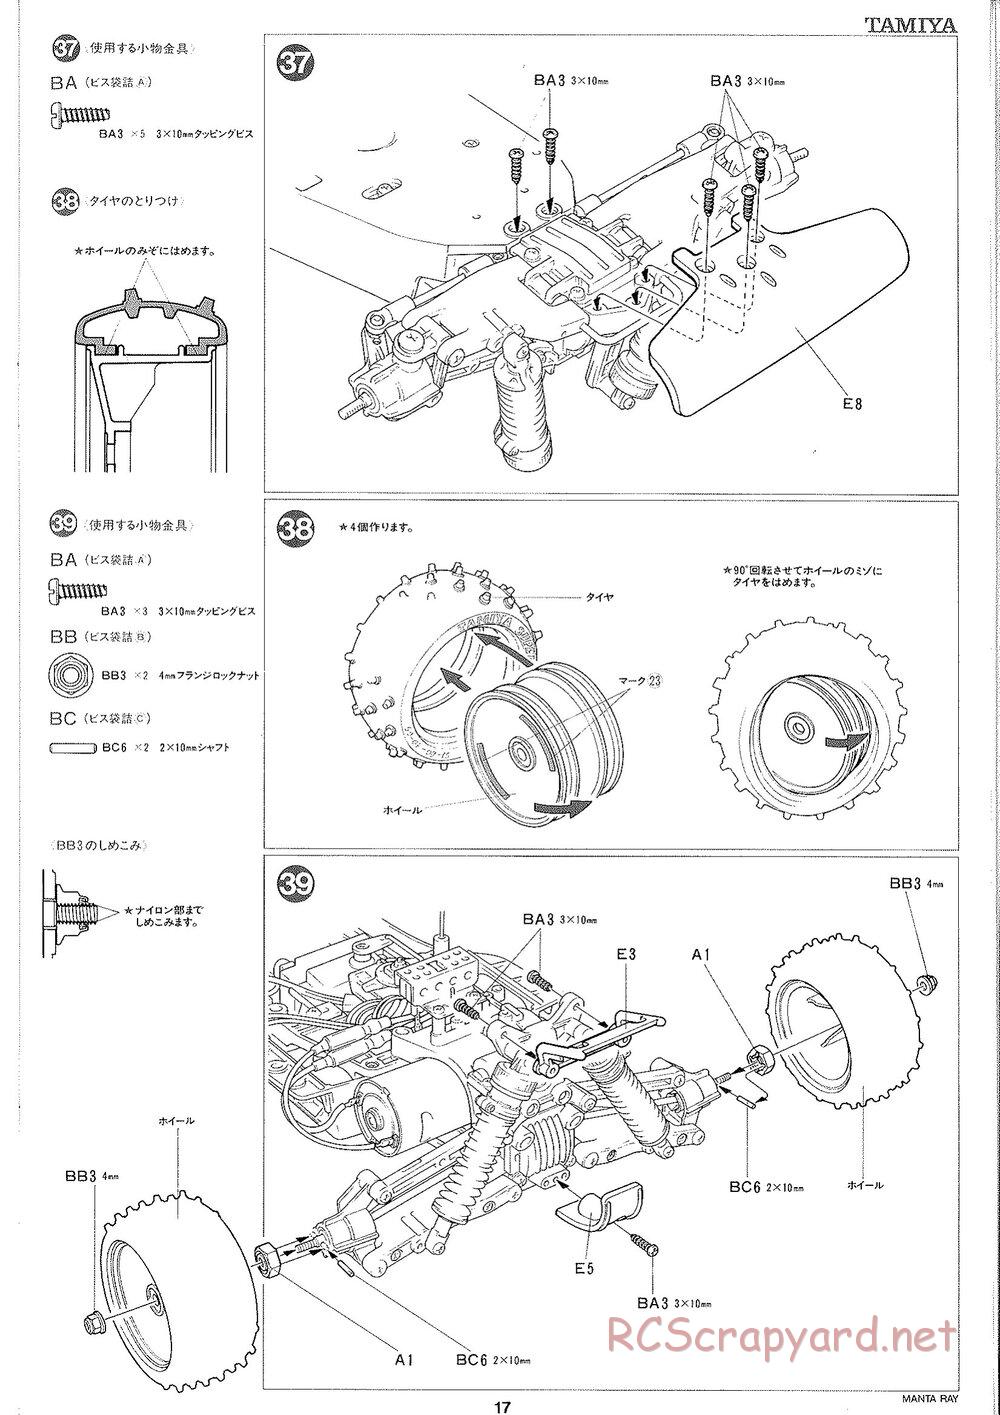 Tamiya - Manta Ray 2005 - DF-01 Chassis - Manual - Page 18